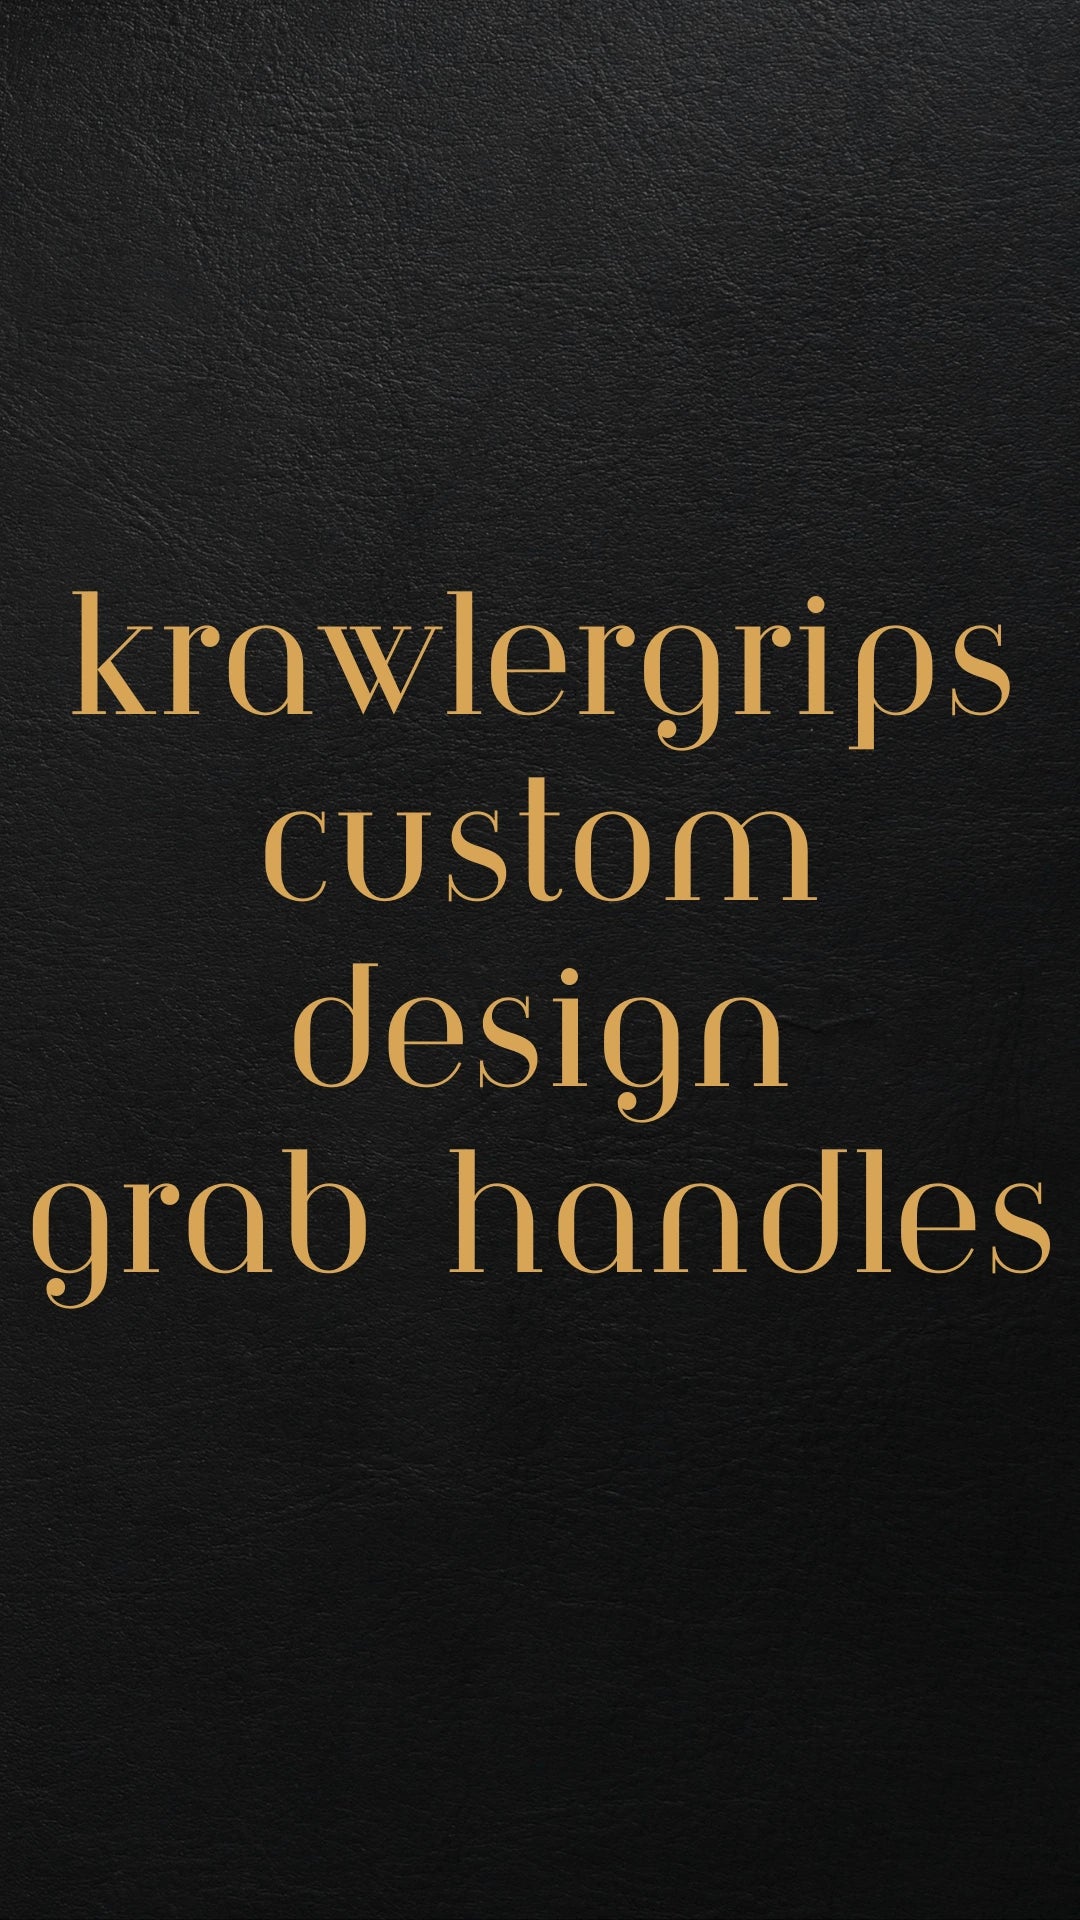 Customer designs grab handles